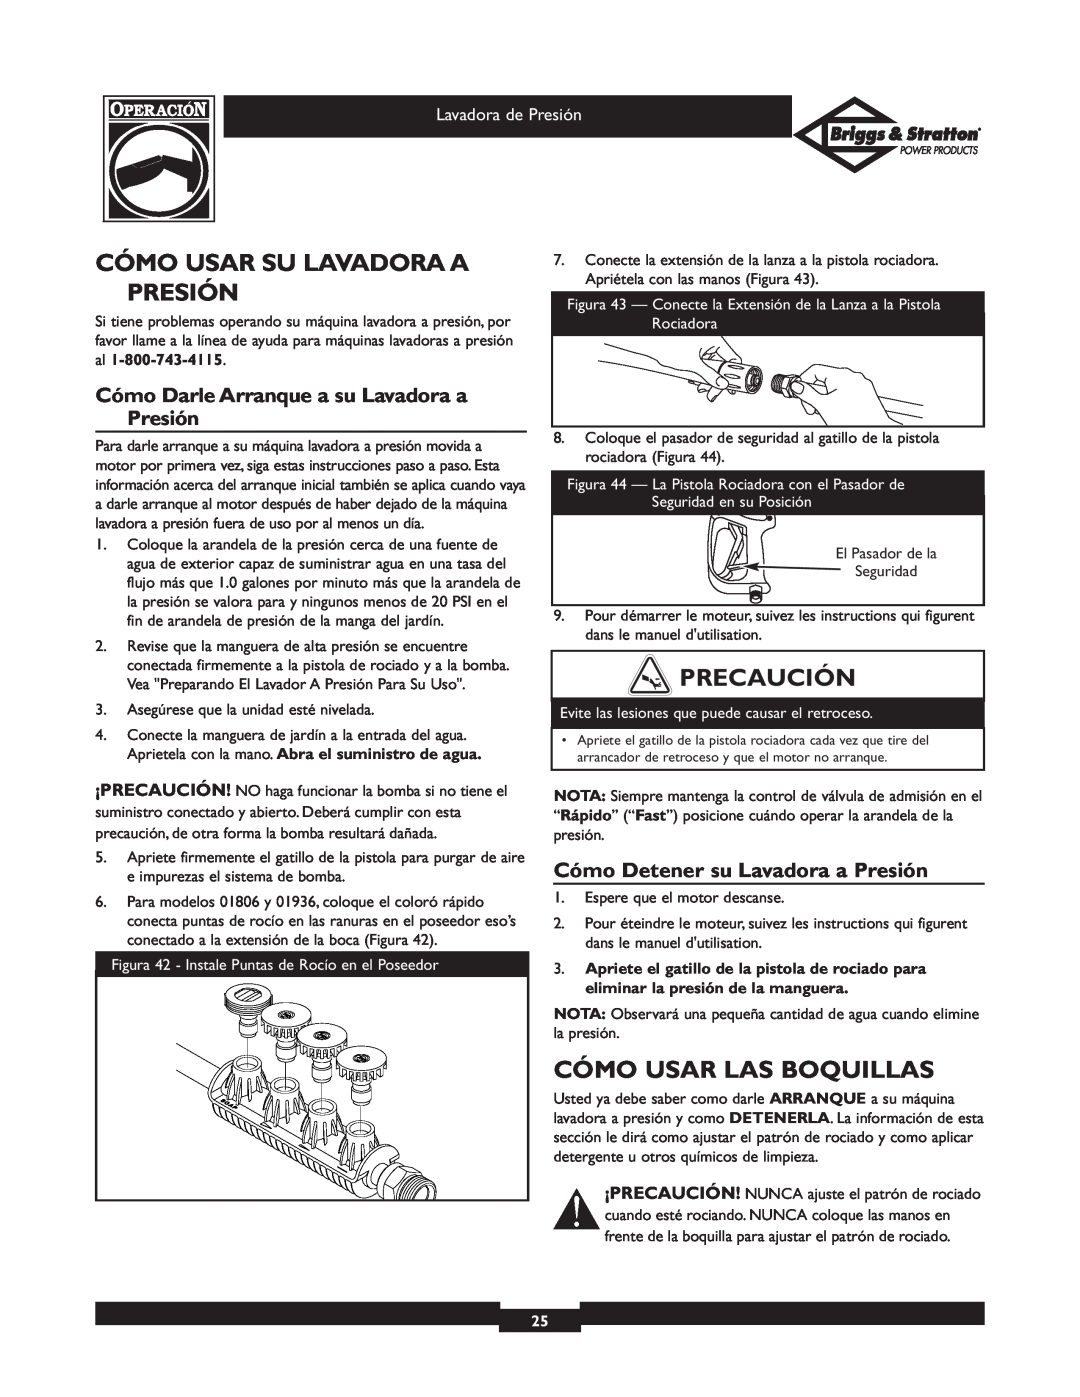 Briggs & Stratton 01806 Cómo Usar Su Lavadora A Presión, Cómo Usar Las Boquillas, Cómo Detener su Lavadora a Presión 